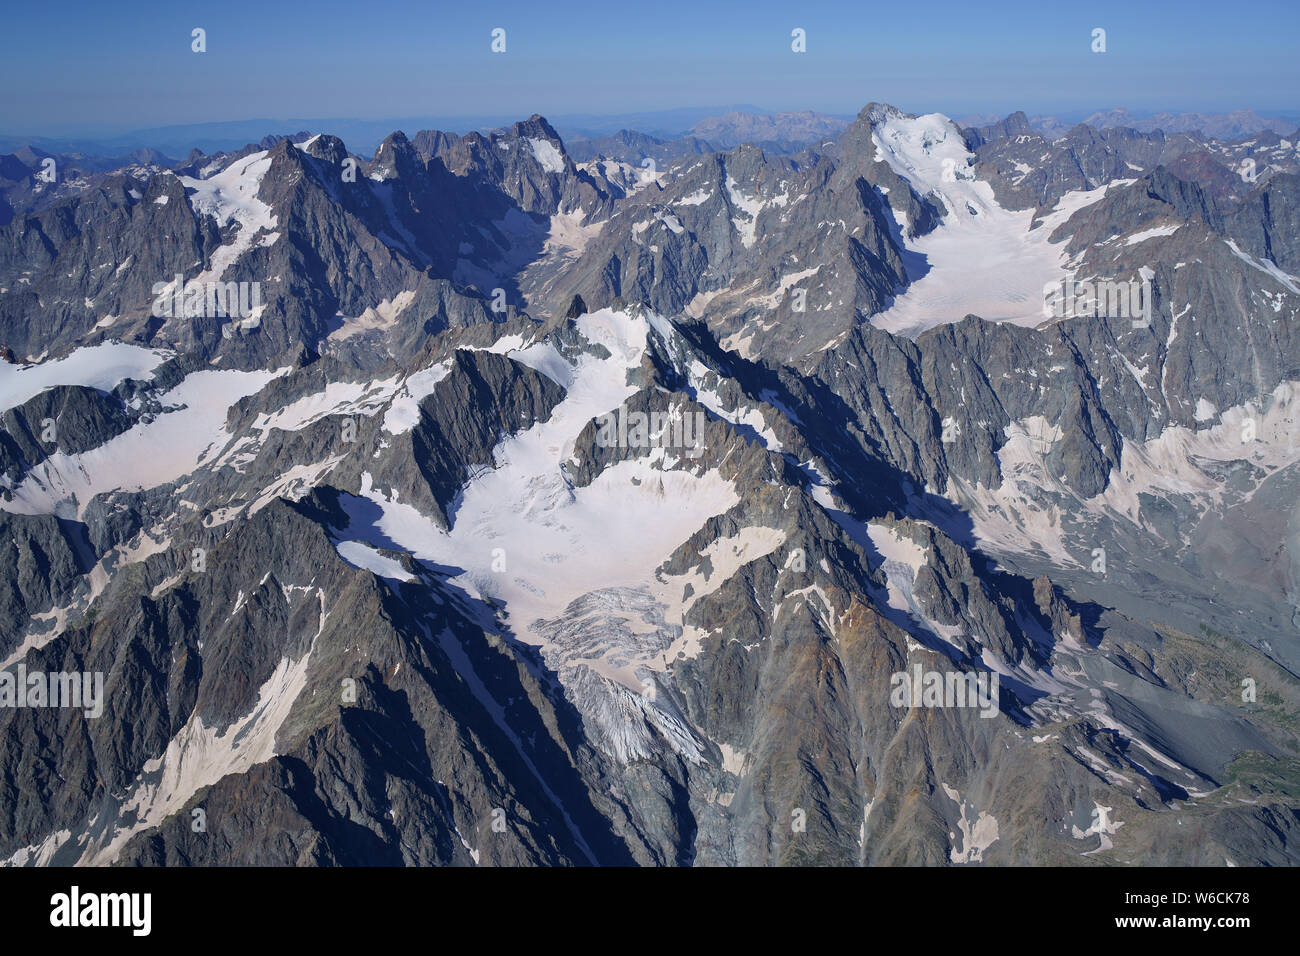 VUE AÉRIENNE. Les Écrins massif avec le Mont Pelvoux (horizon, à gauche) et la barre des Écrins (horizon, à droite). Pelvoux, Hautes-Alpes, France. Banque D'Images